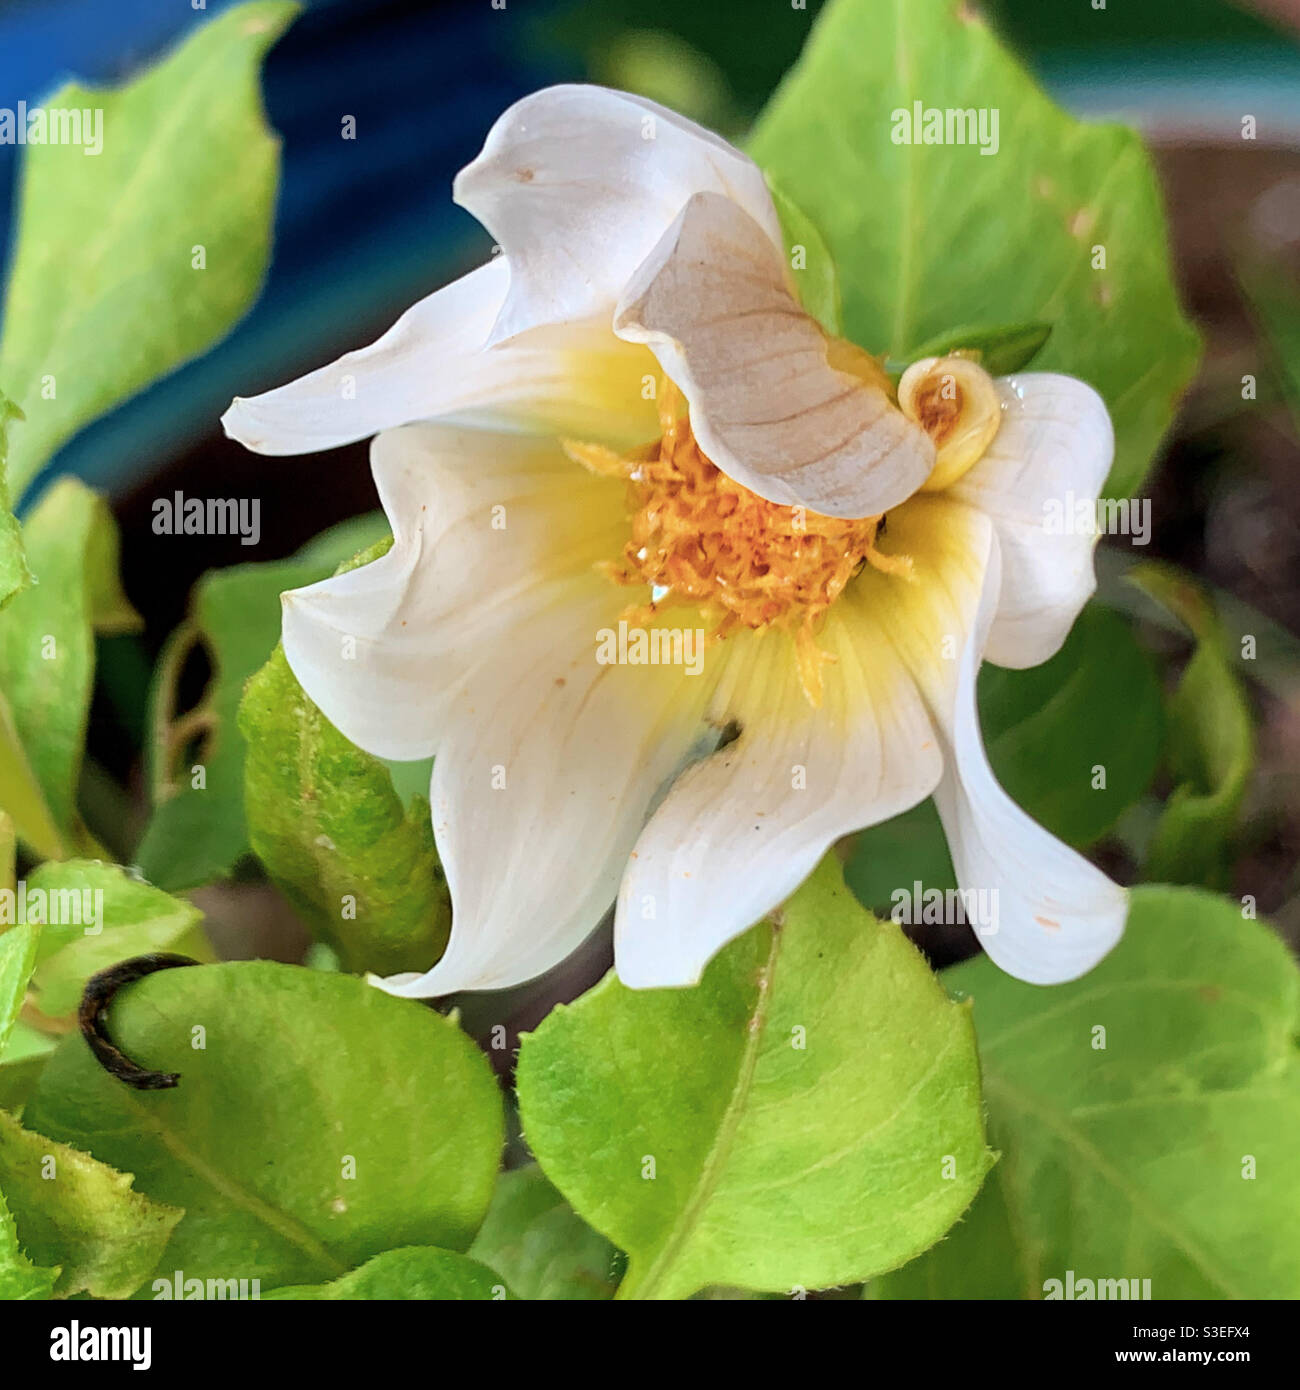 Arte naturale, fiori, bellissimi petali artistici curvati sul bianco cremoso e giallo Dahlia fiore apertura tentativamente, macro Foto Stock